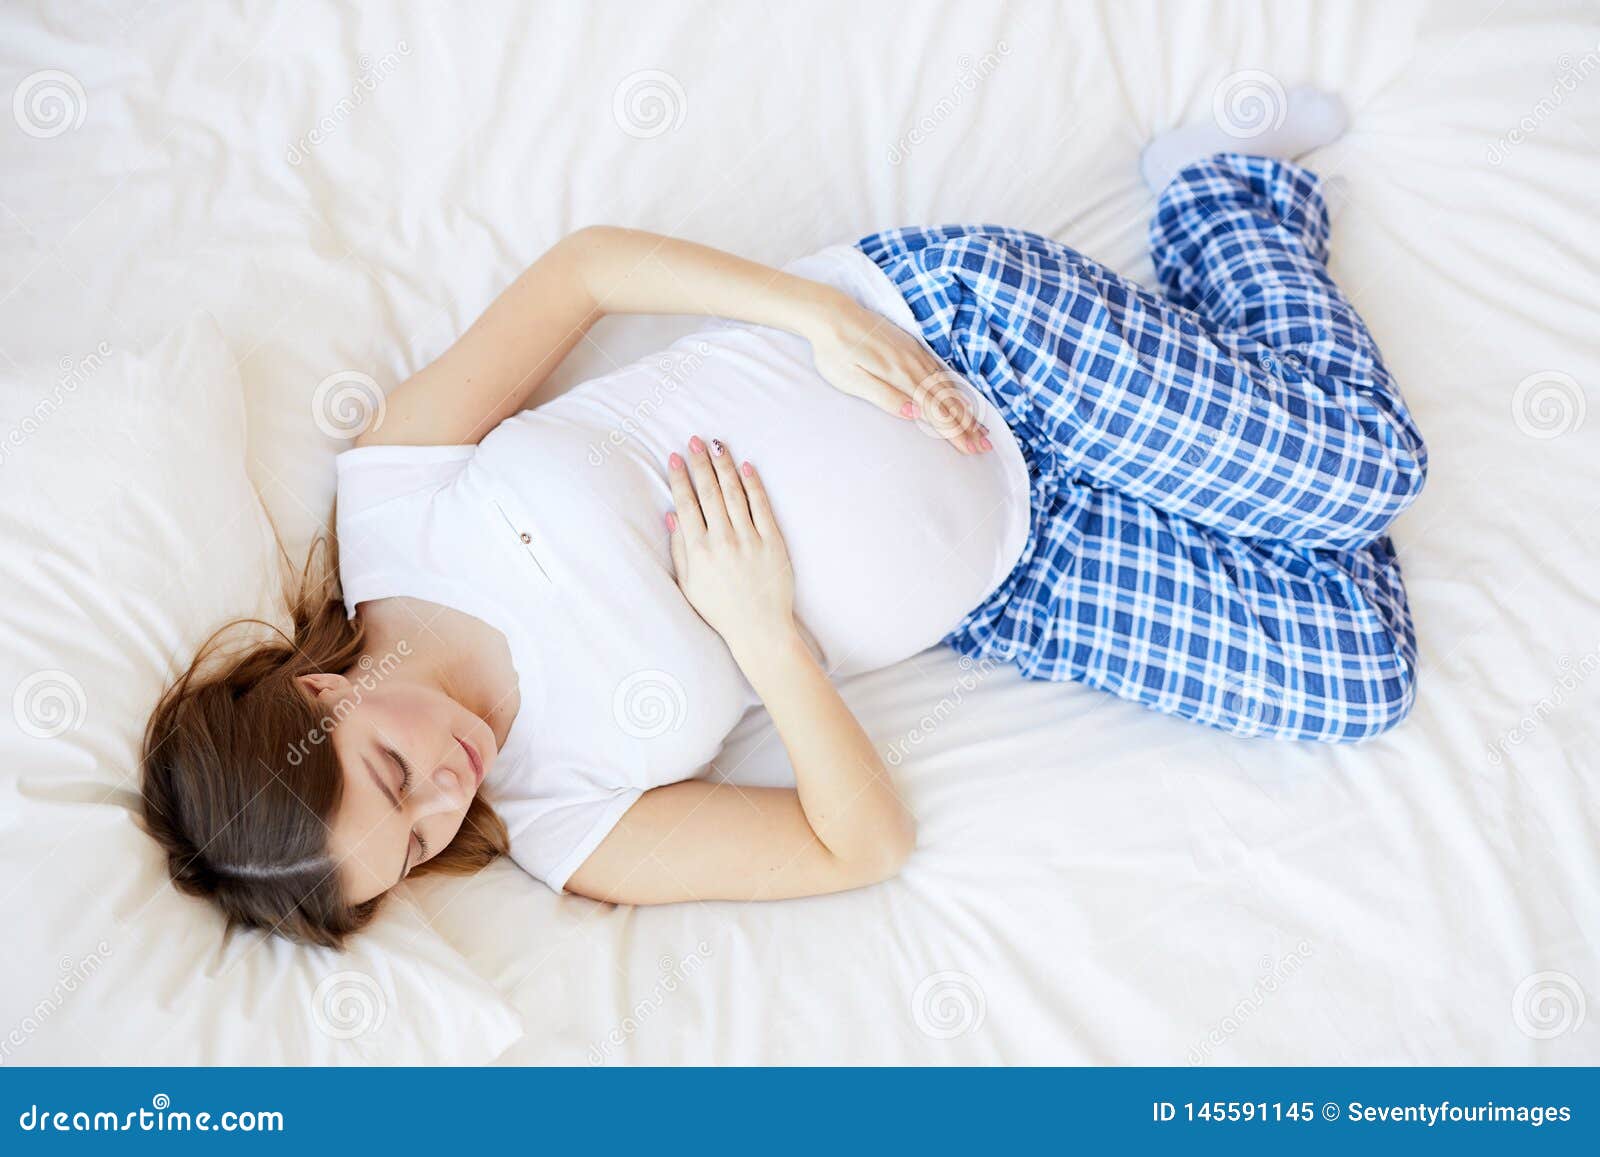 Беременна хочется спать. Сон беременной. Беременные женщины во сне. Как спят беременные женщины.